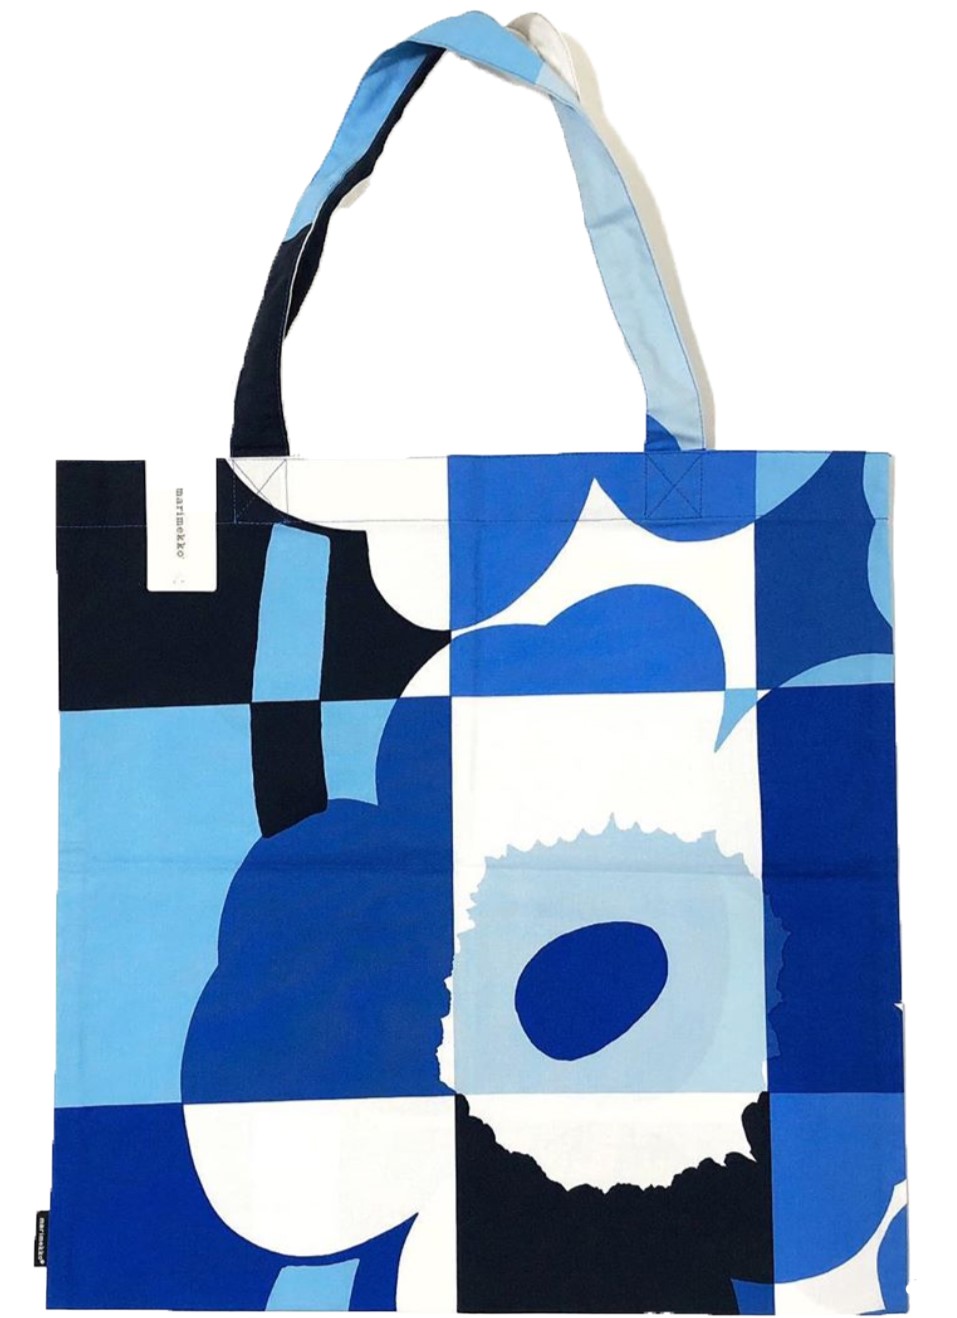 พร้อมส่ง) กระเป๋า Marimekko -Tote bag Ruutu Unikko Kassi สีฟ้า ของแท้ 100%  มีป้ายแท็ก 